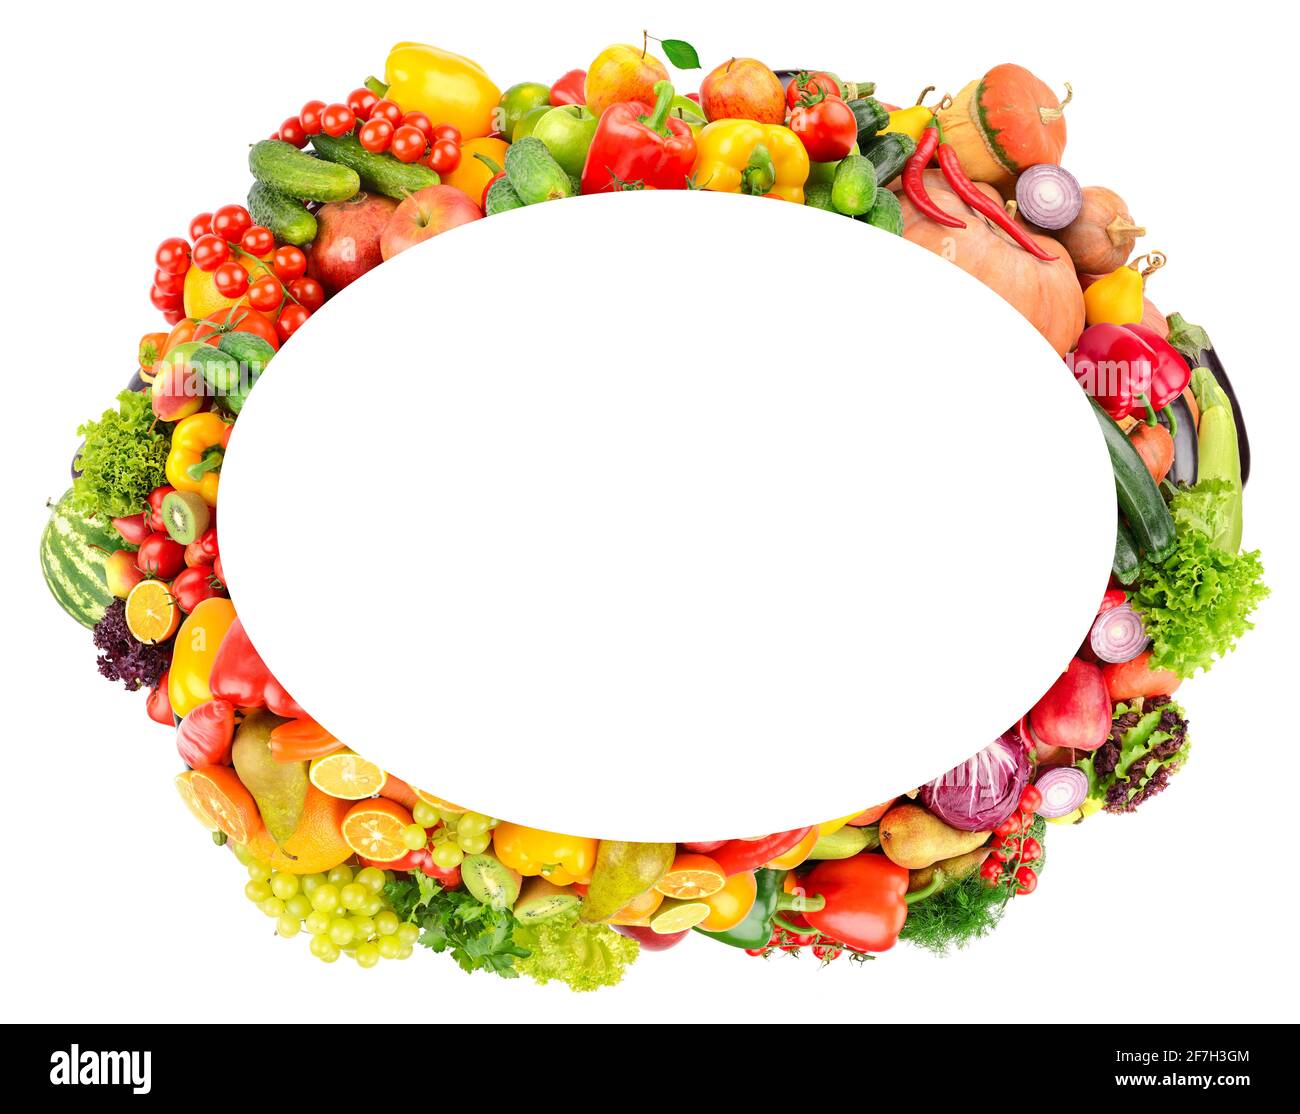 Cornice ovale di verdure mature e frutta. Spazio di copia Foto Stock